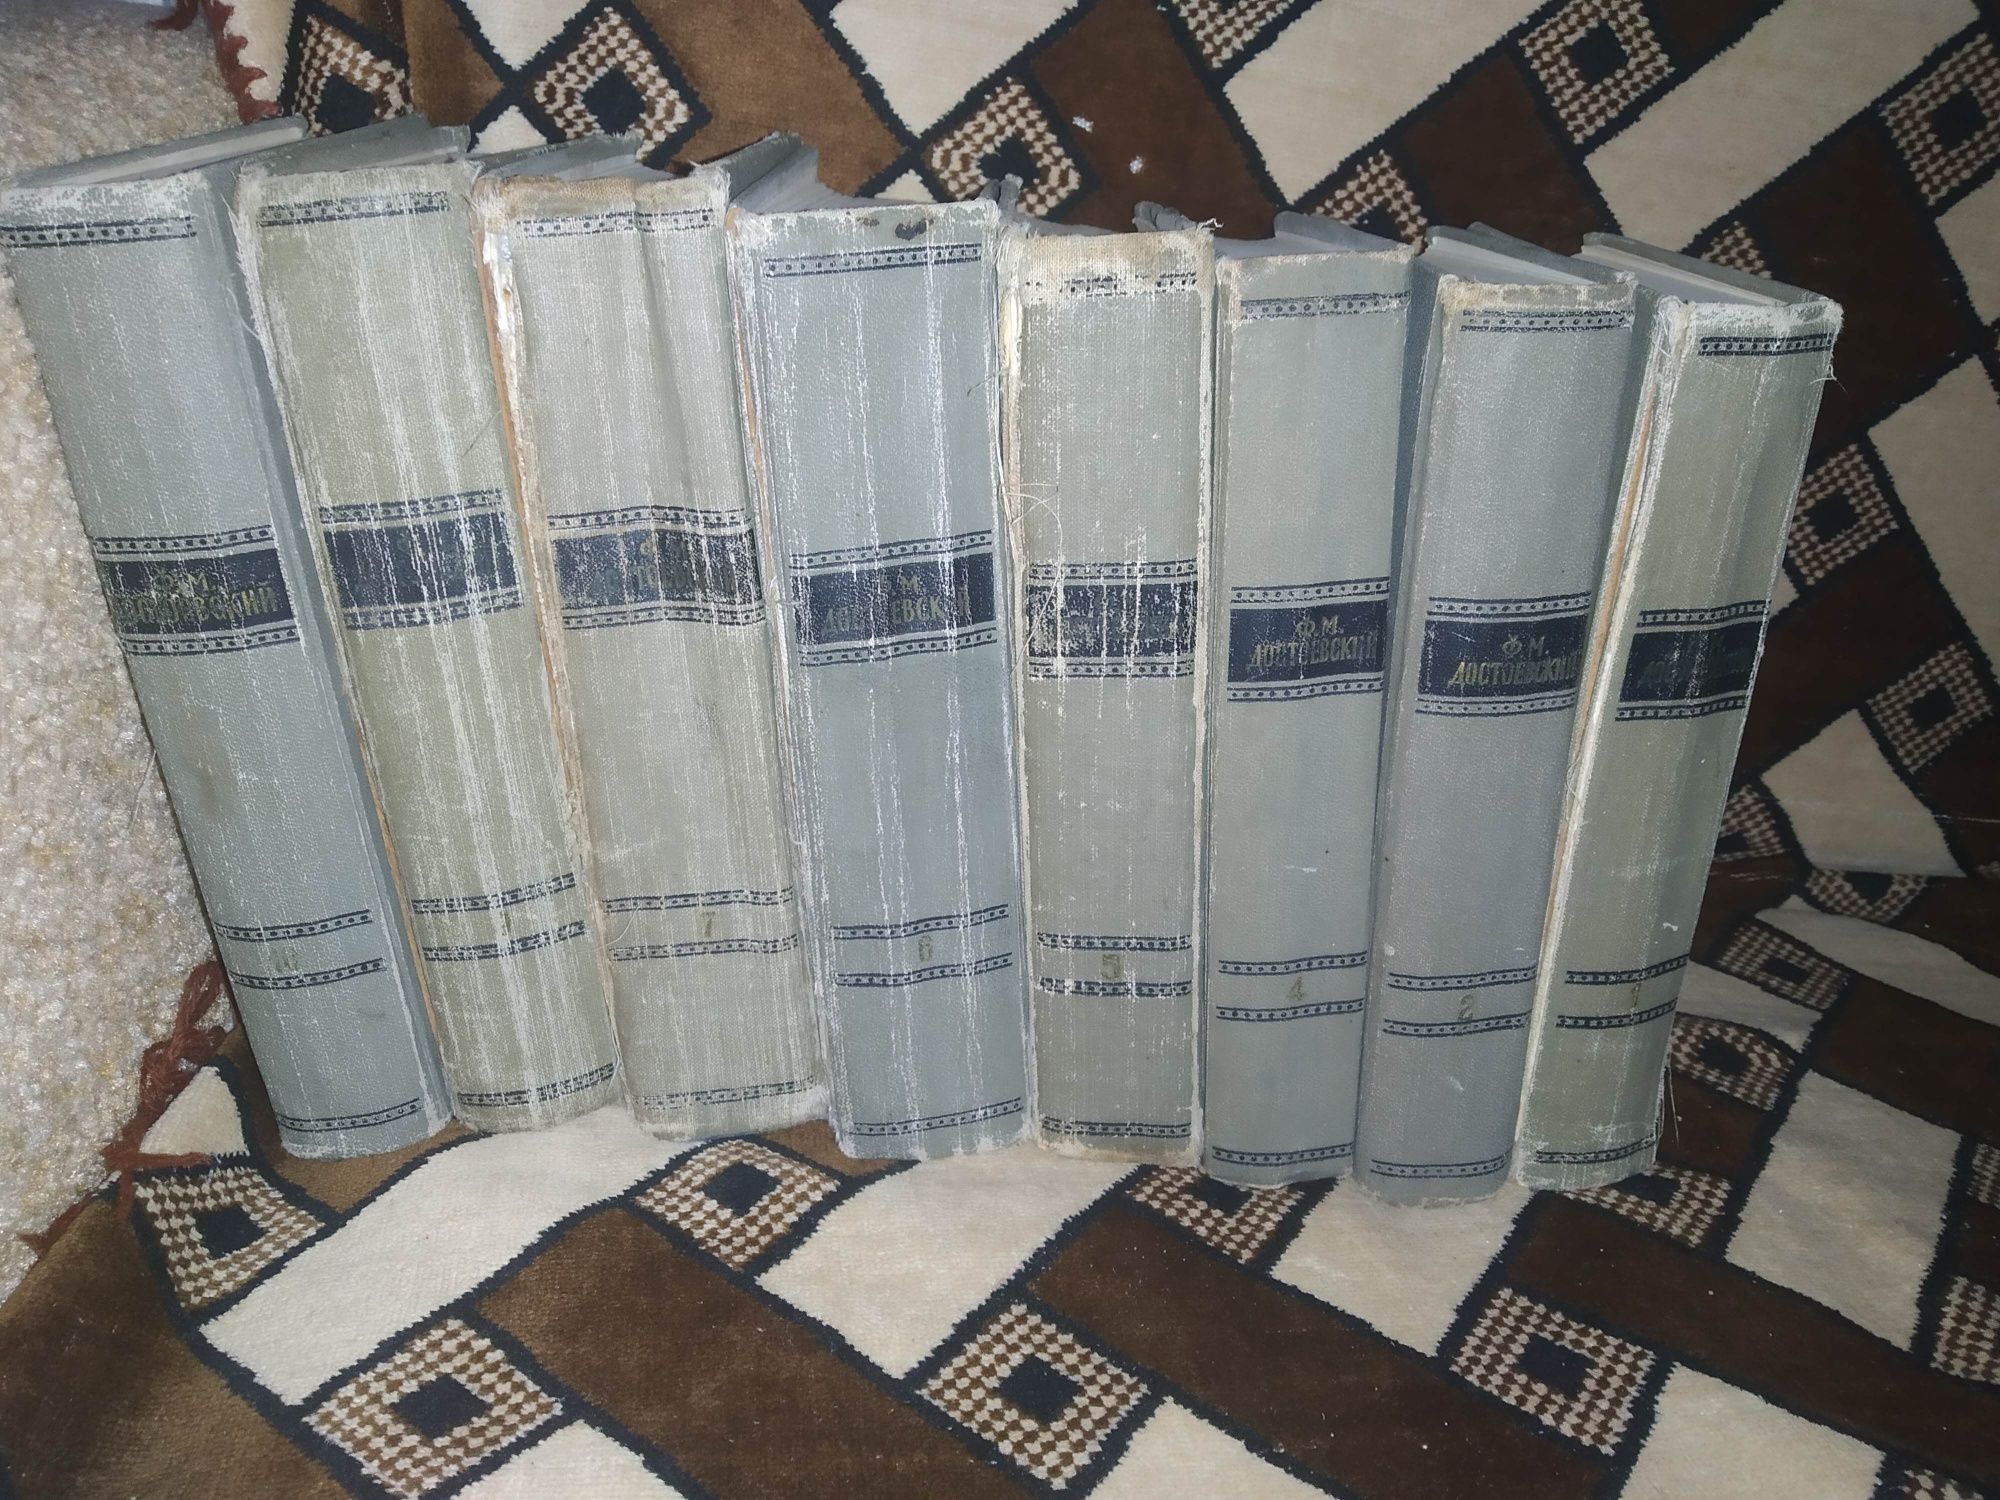 Ф. М. Достоевский Собрание сочинений в 10 томах, 1956 г, все законченн